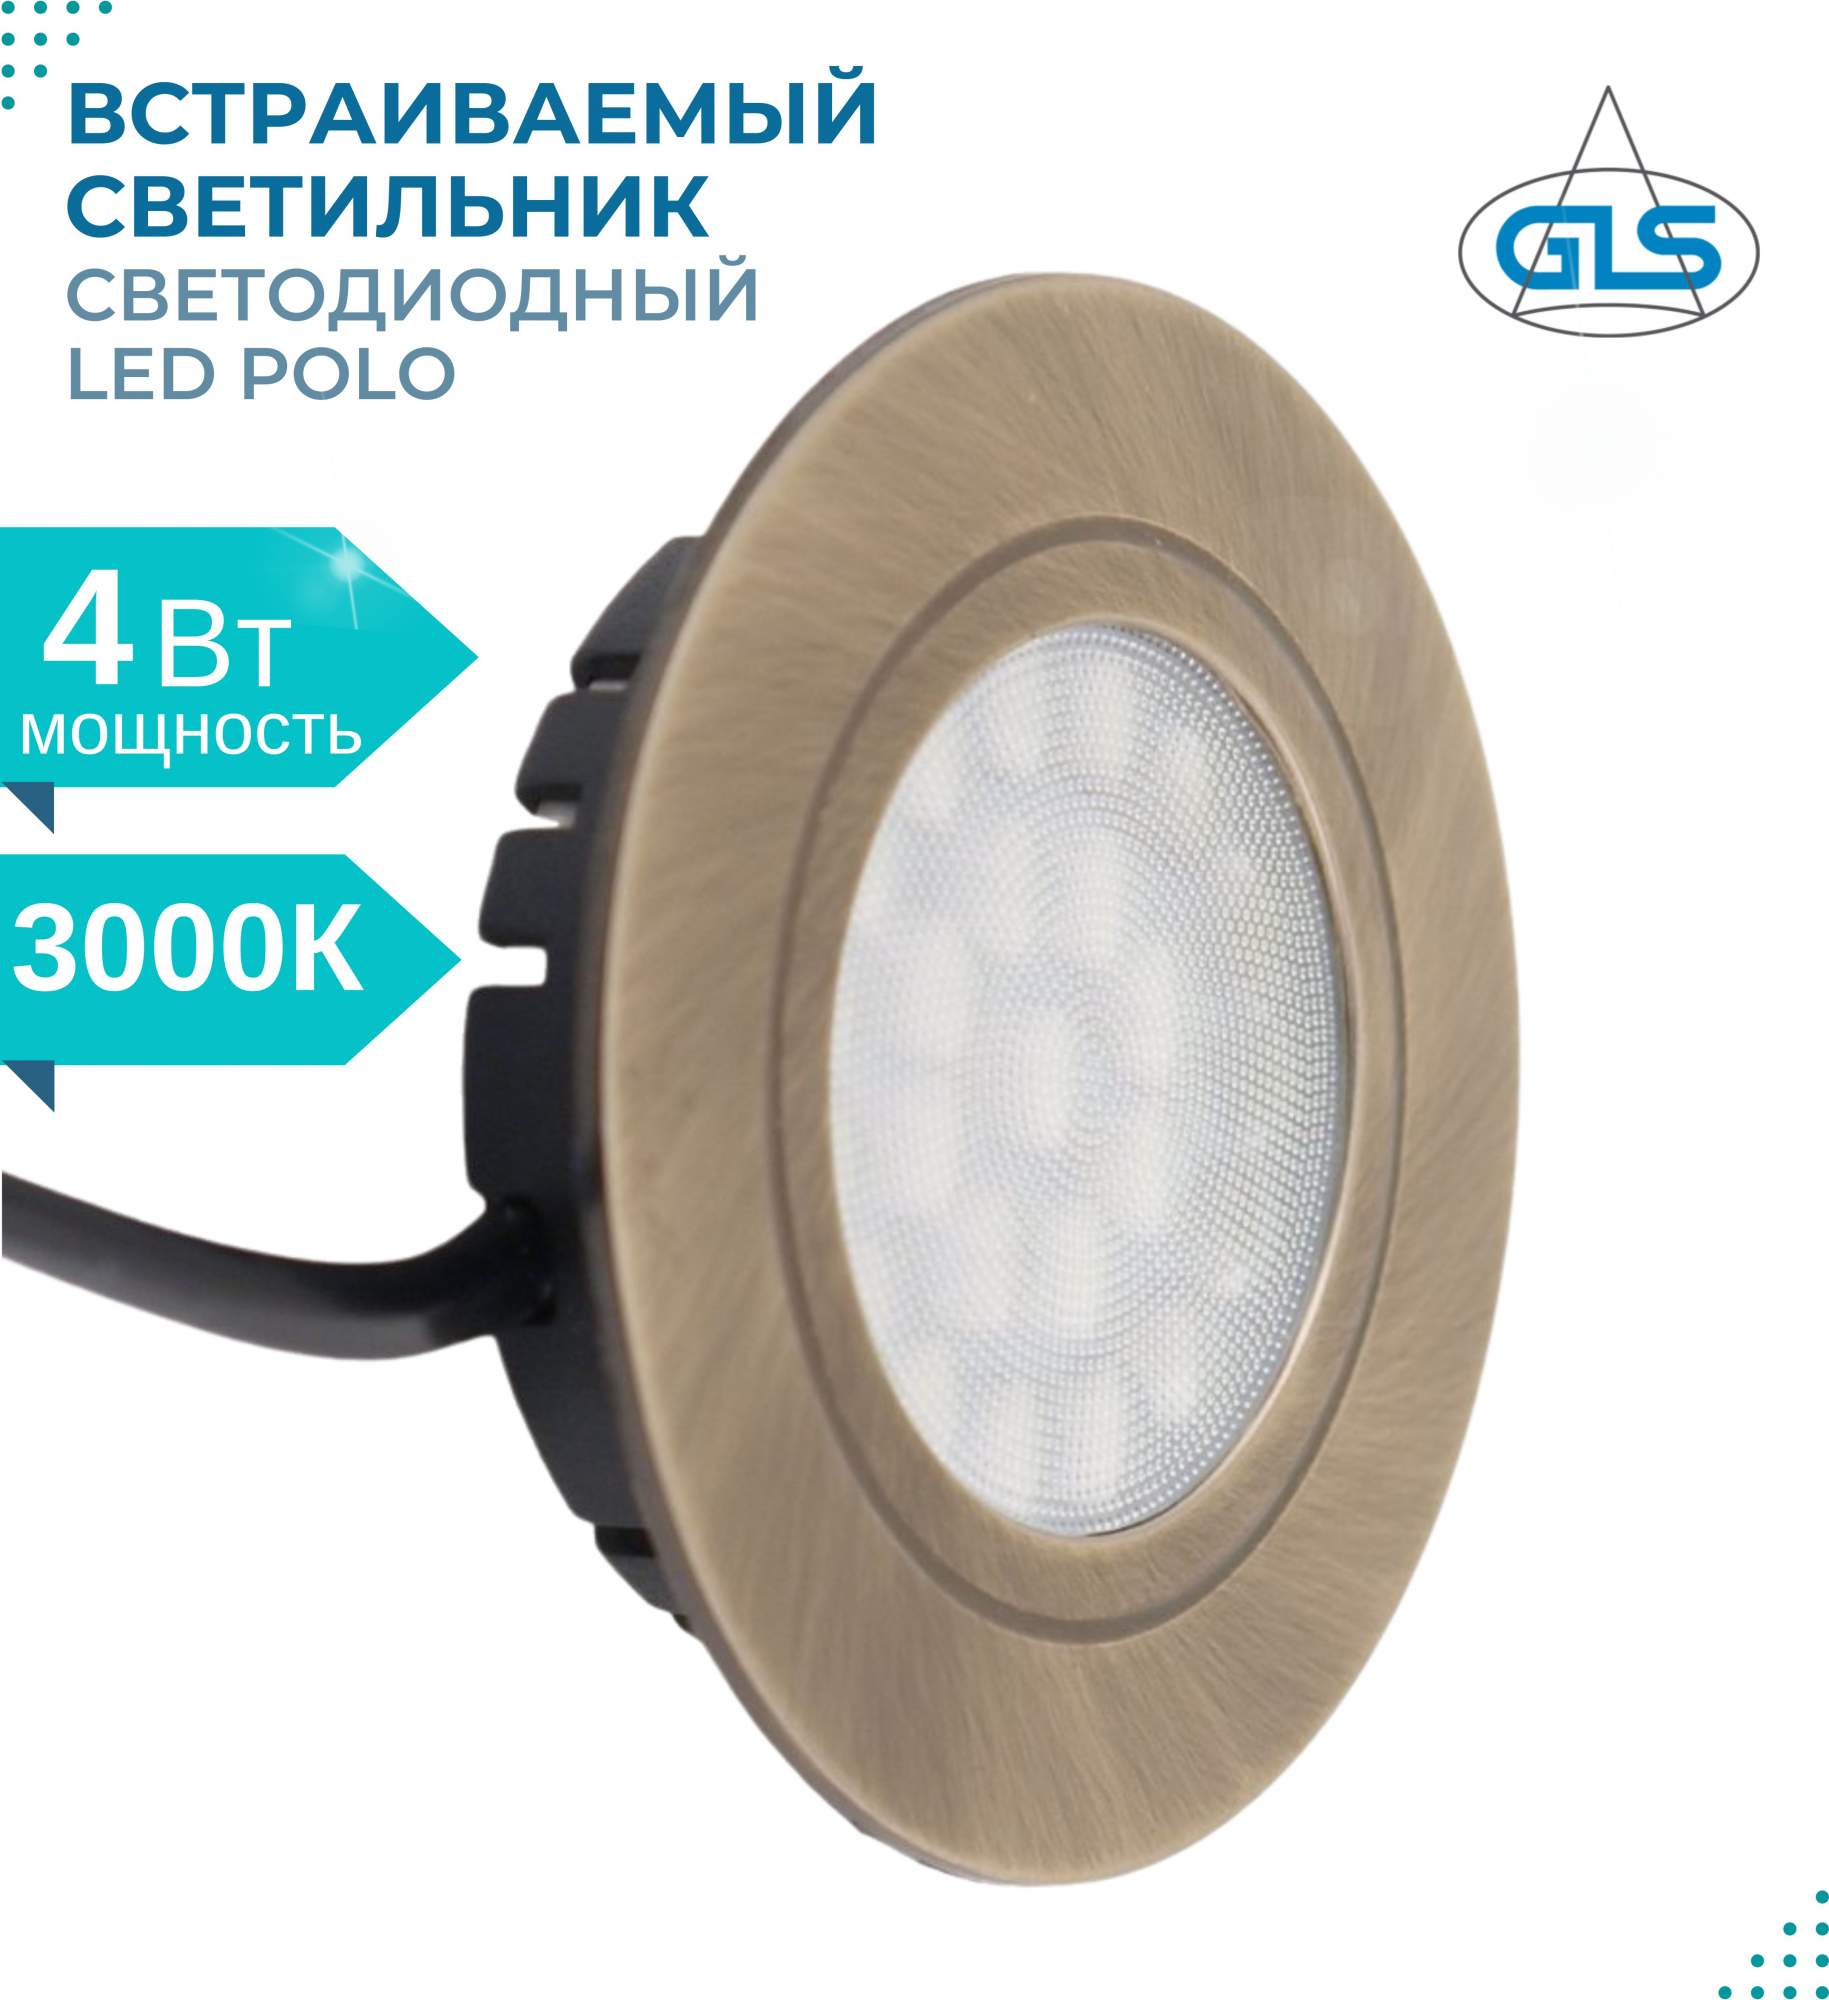 Встраиваемый светильник POLO светодиодный мебельный врезной 12В 4 Вт .